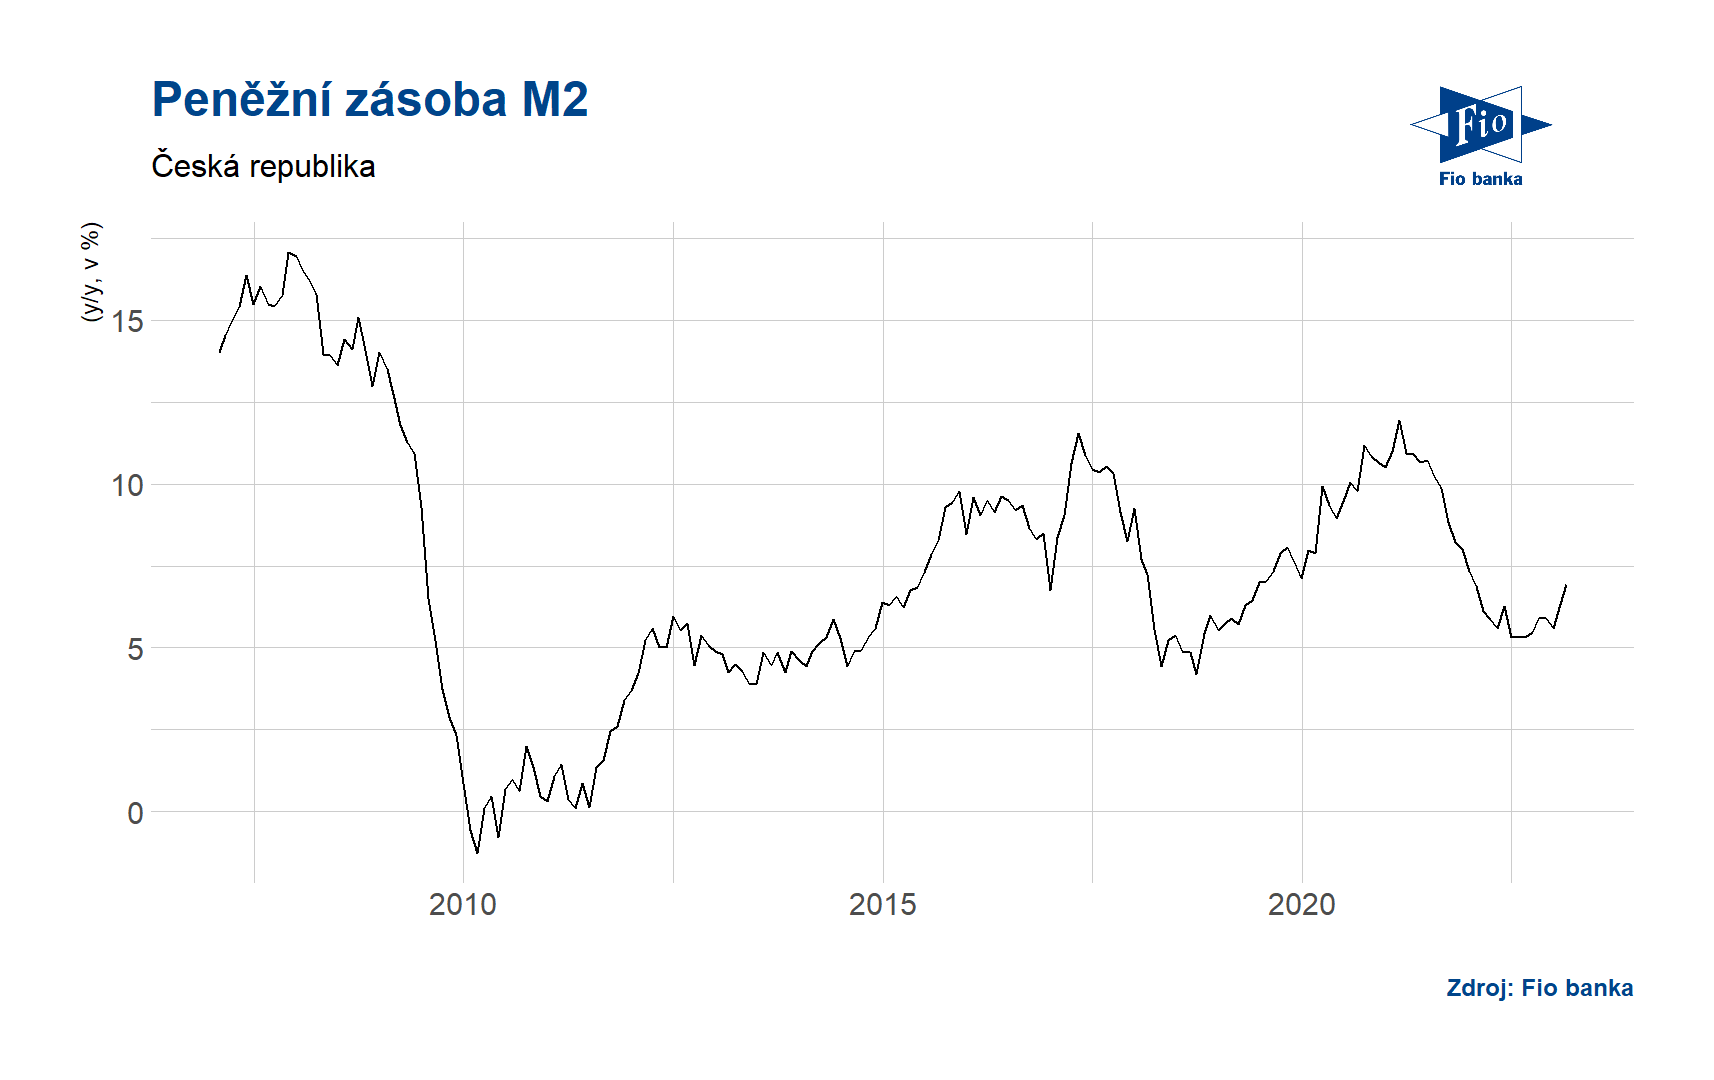 Vývoj měnové zásoby M2 v České republice